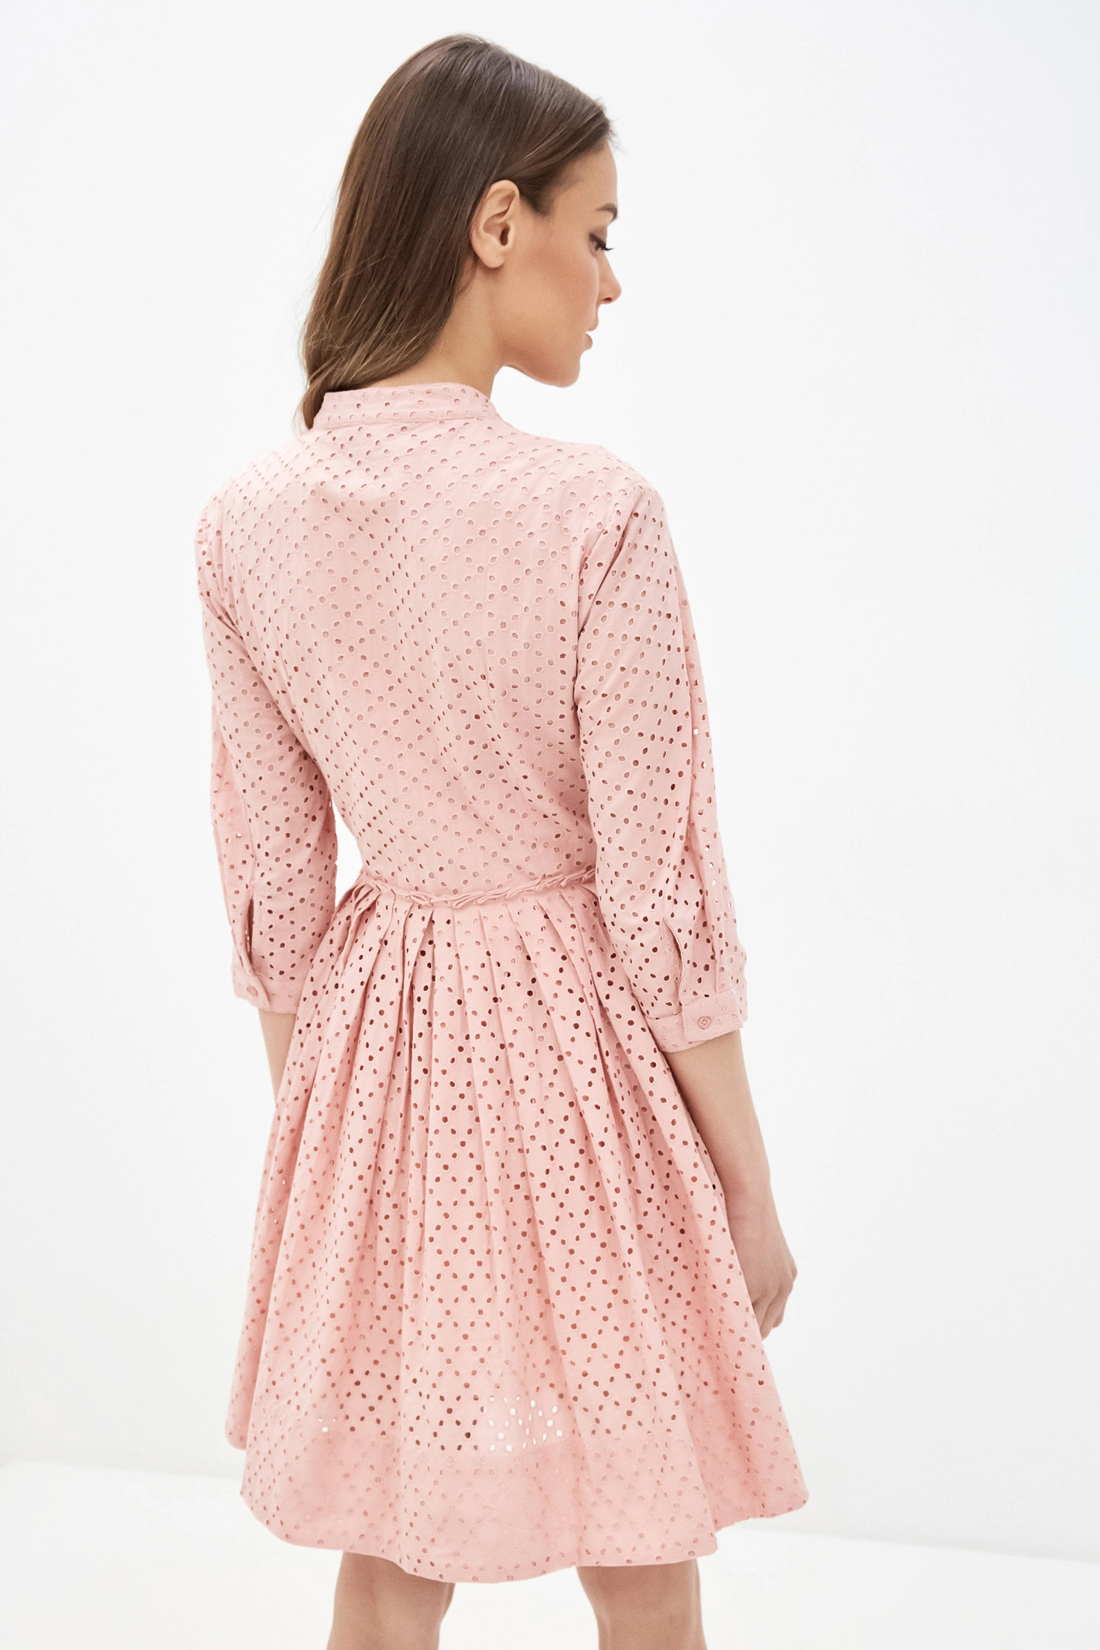 Платье (арт. baon B450043), размер XL, цвет розовый Платье (арт. baon B450043) - фото 2